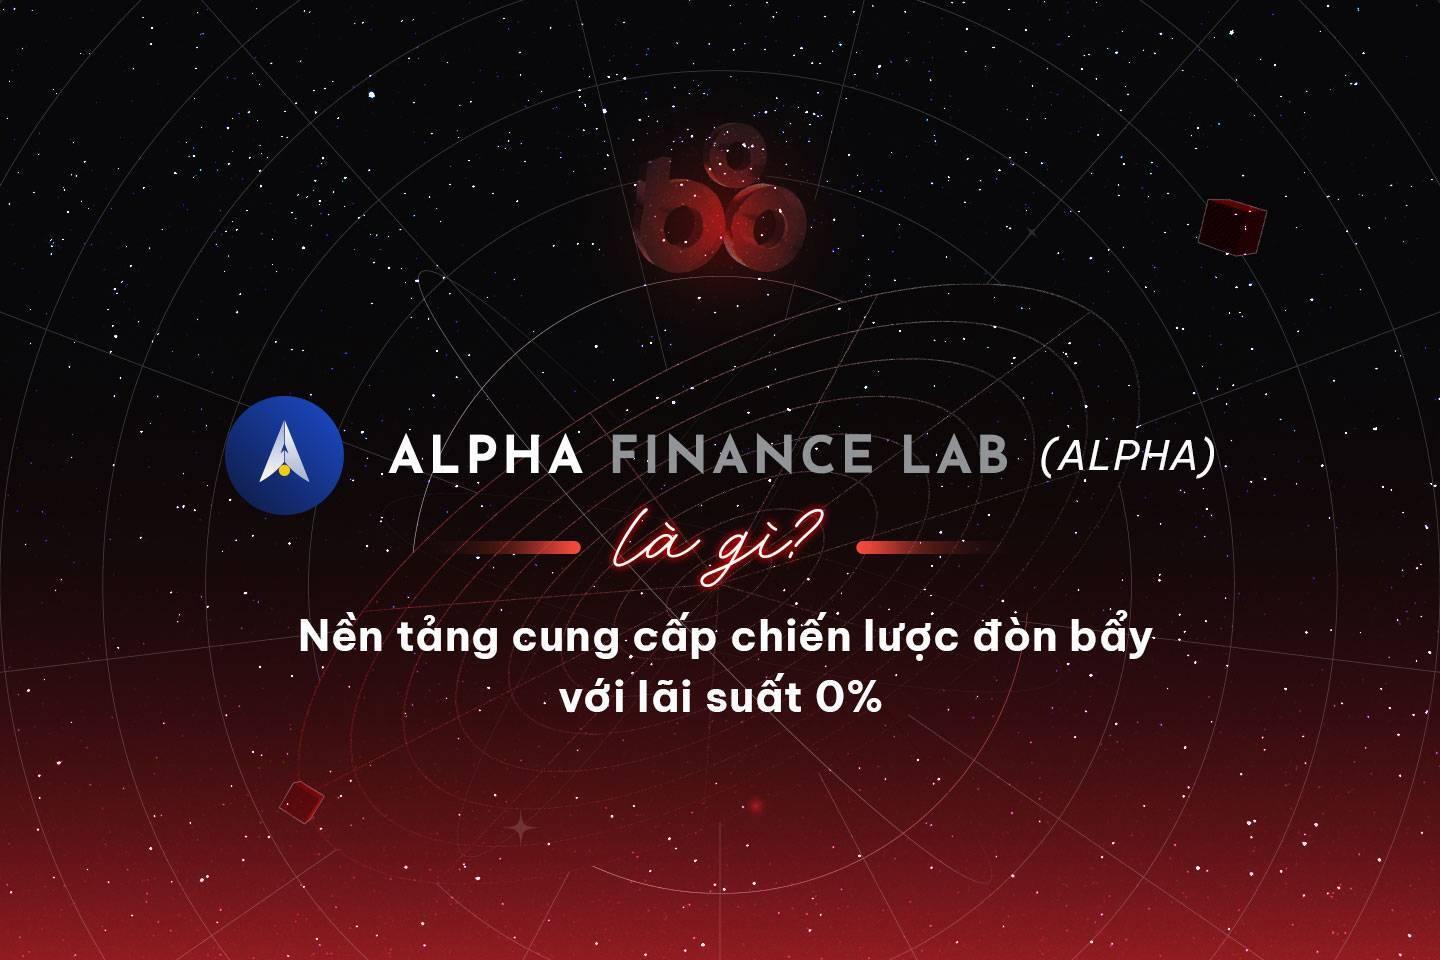 alpha-finance-lab-alpha-la-gi-nen-tang-cung-cap-chien-luoc-don-bay-voi-lai-suat-0